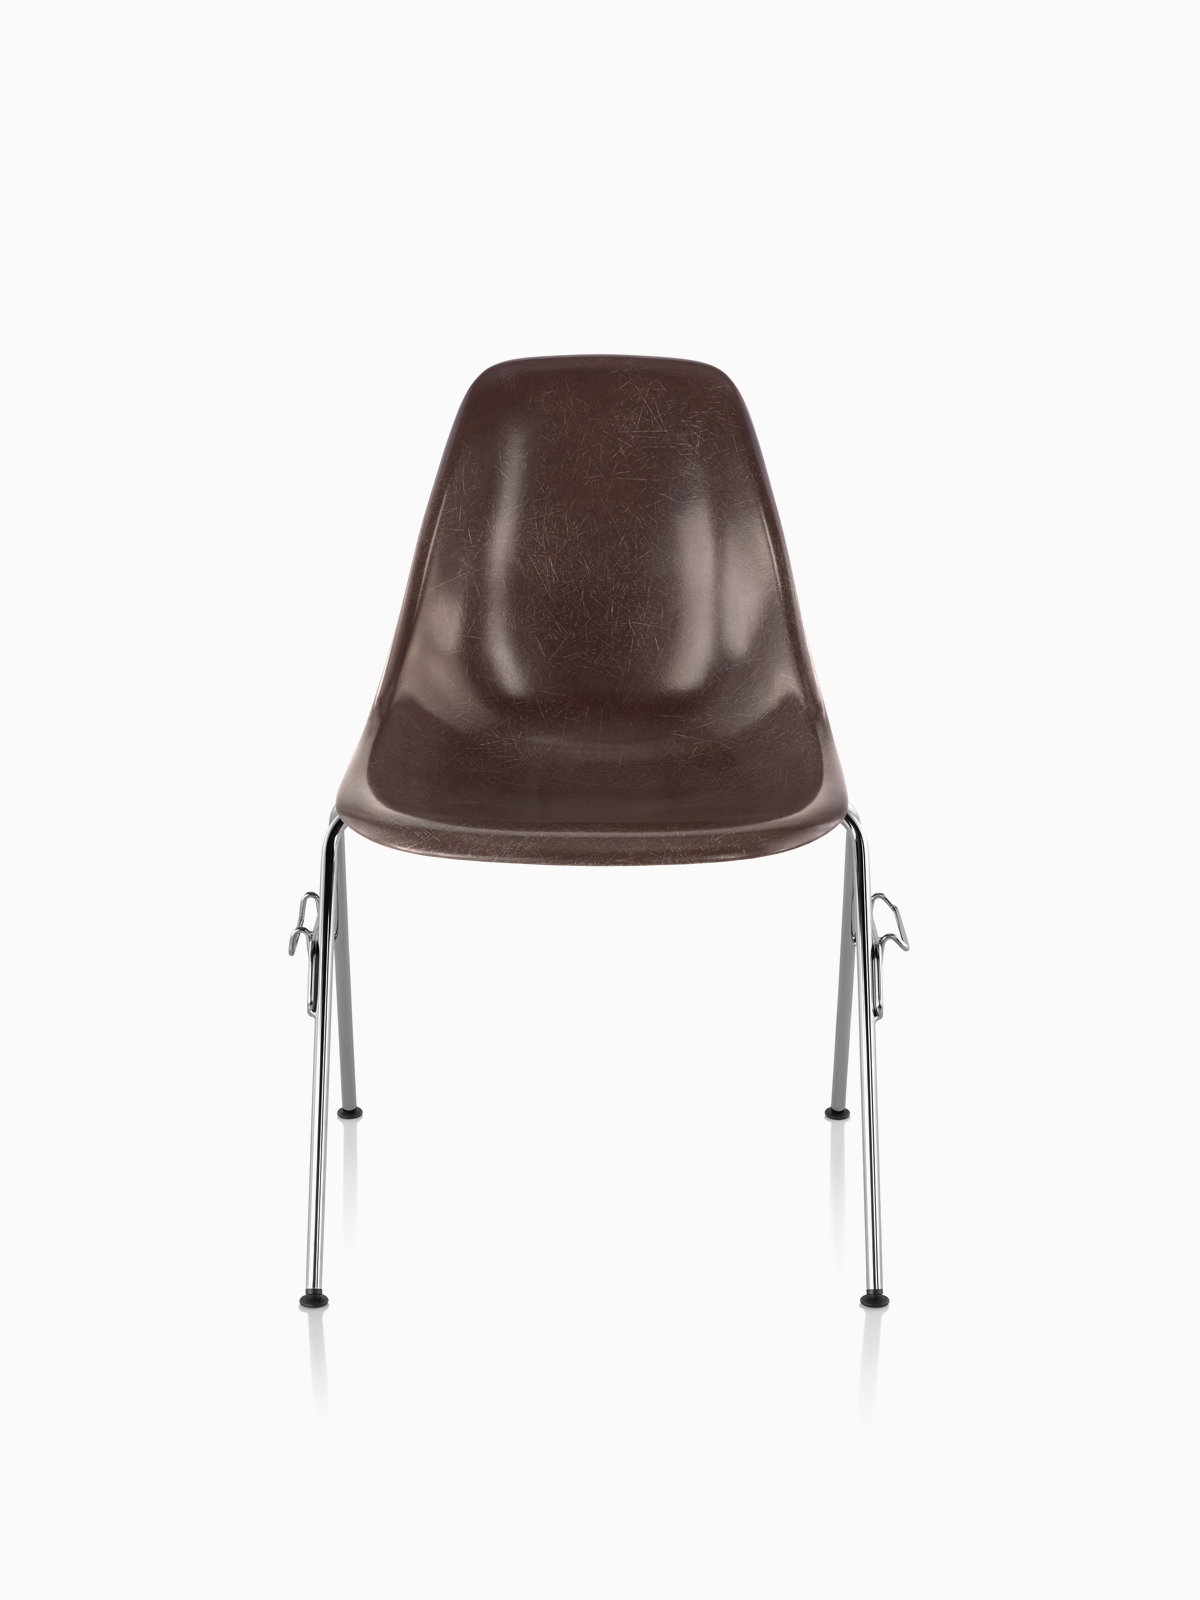 Eames成型玻璃纤维座椅